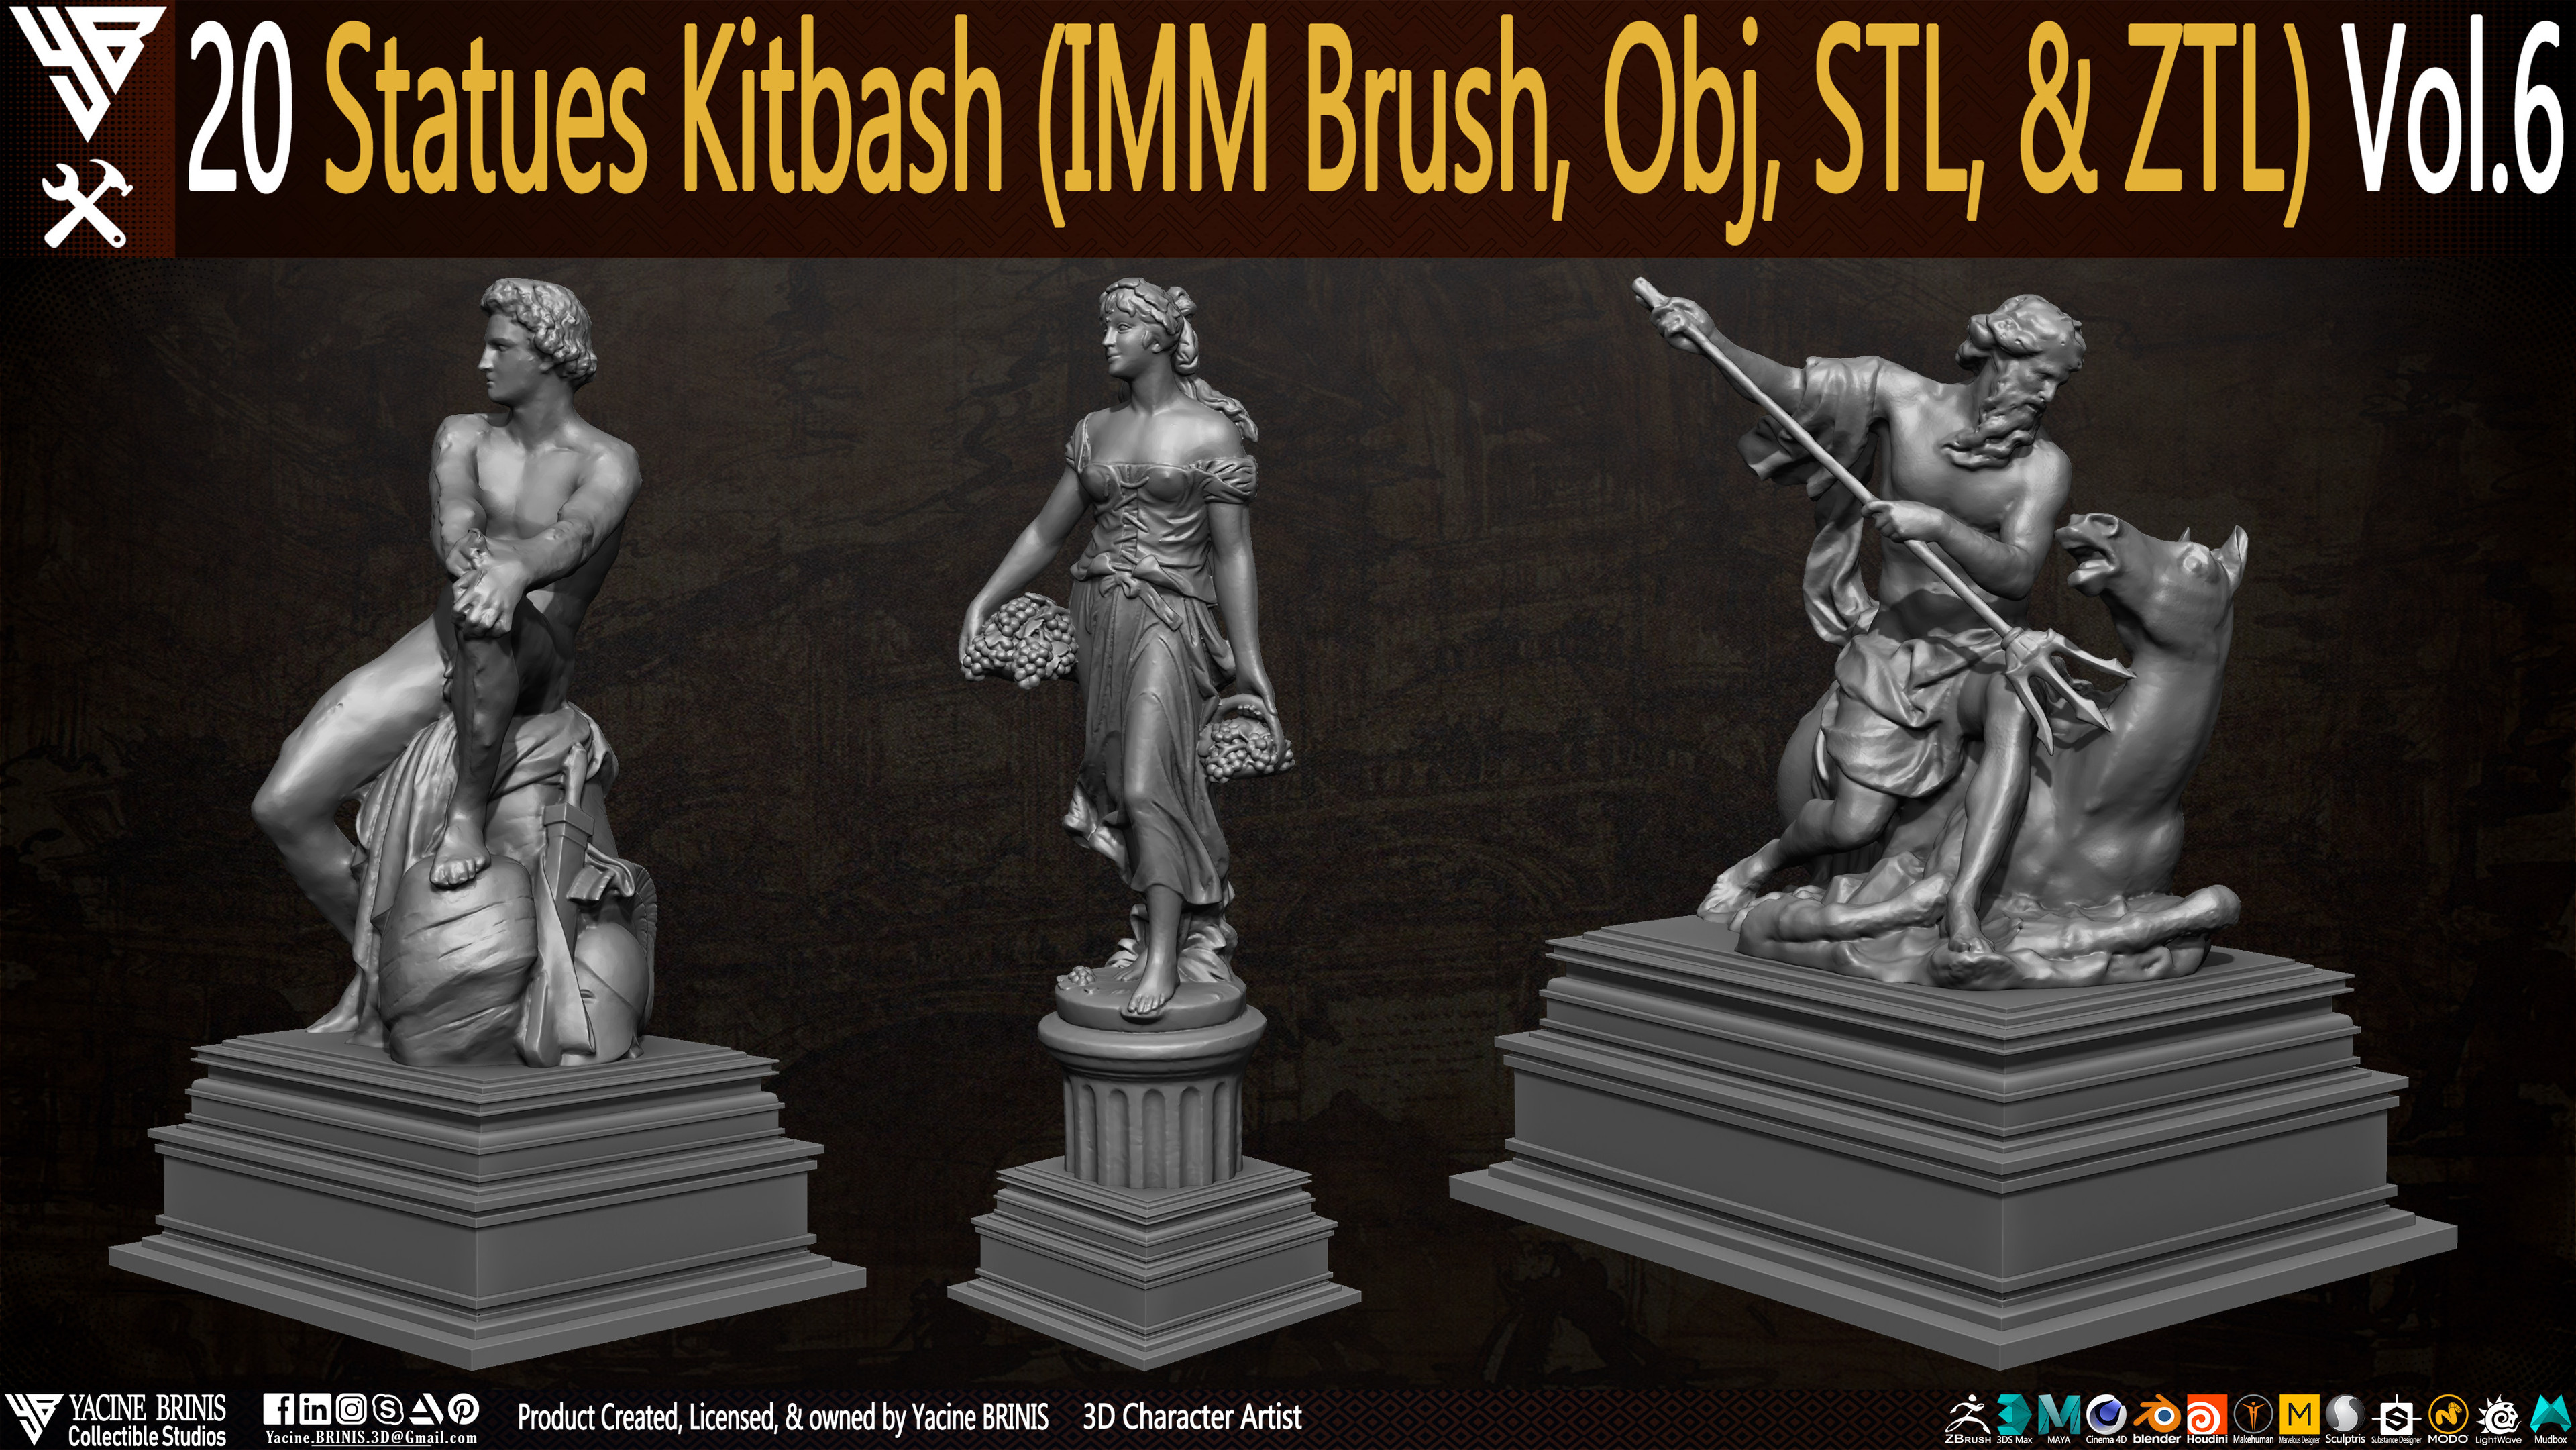 Statues Kitbash by yacine brinis Set 37